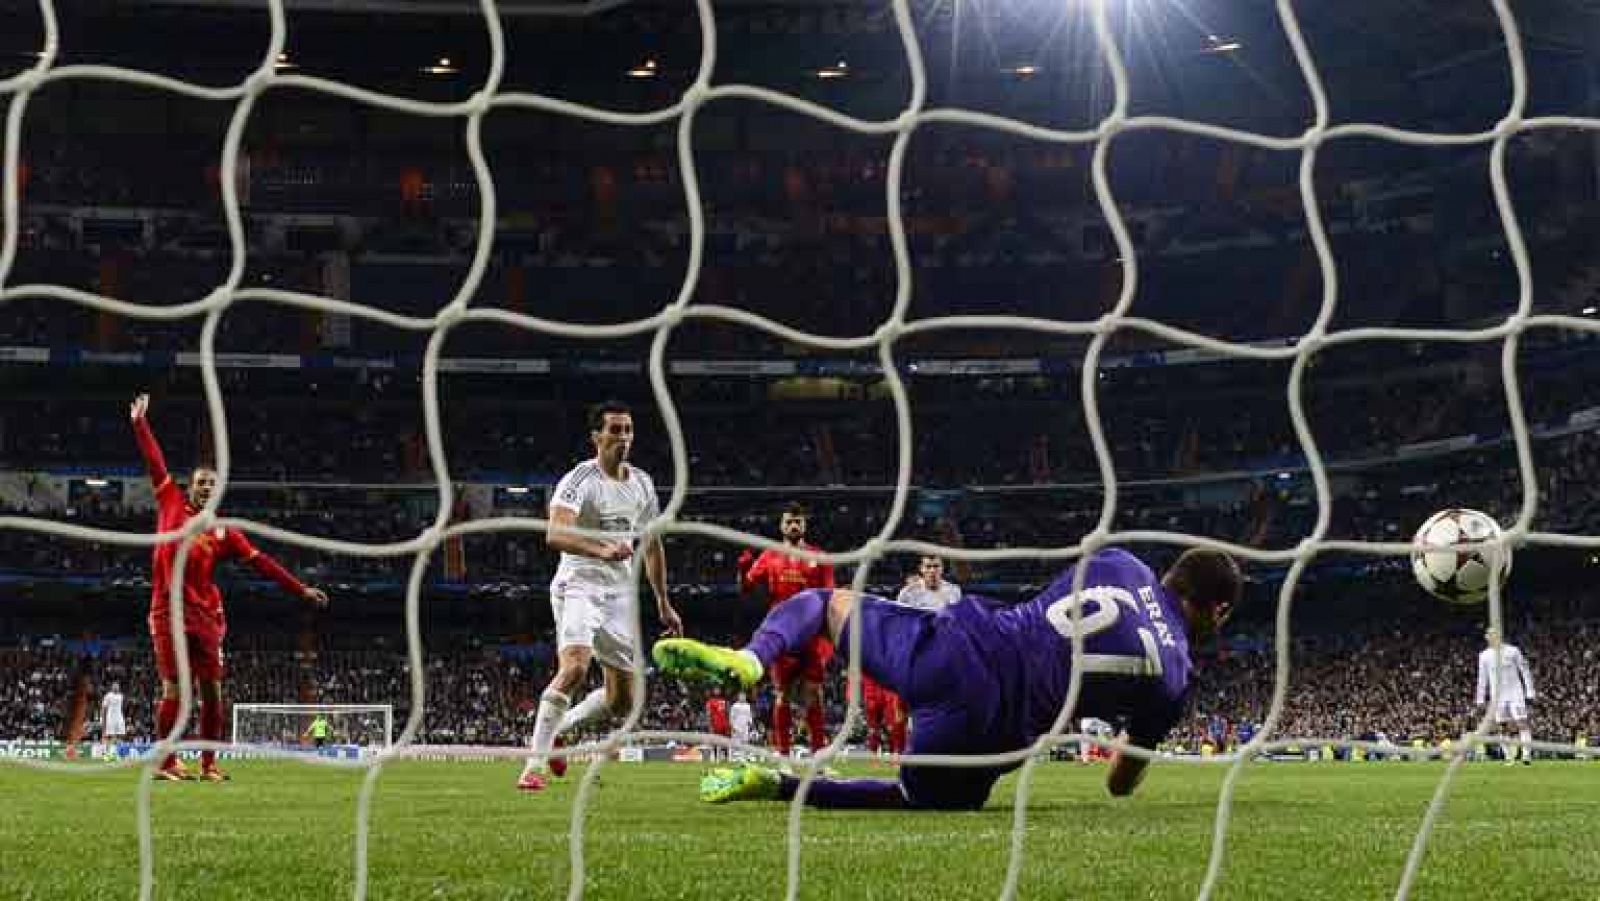 El jugador del Real Madrid Álvaro Arbeloa ha adelantado al equipo de Carlo Ancelotti en el minuto 51 de juego (2-1), tras rematar un pase del argentino Di María.